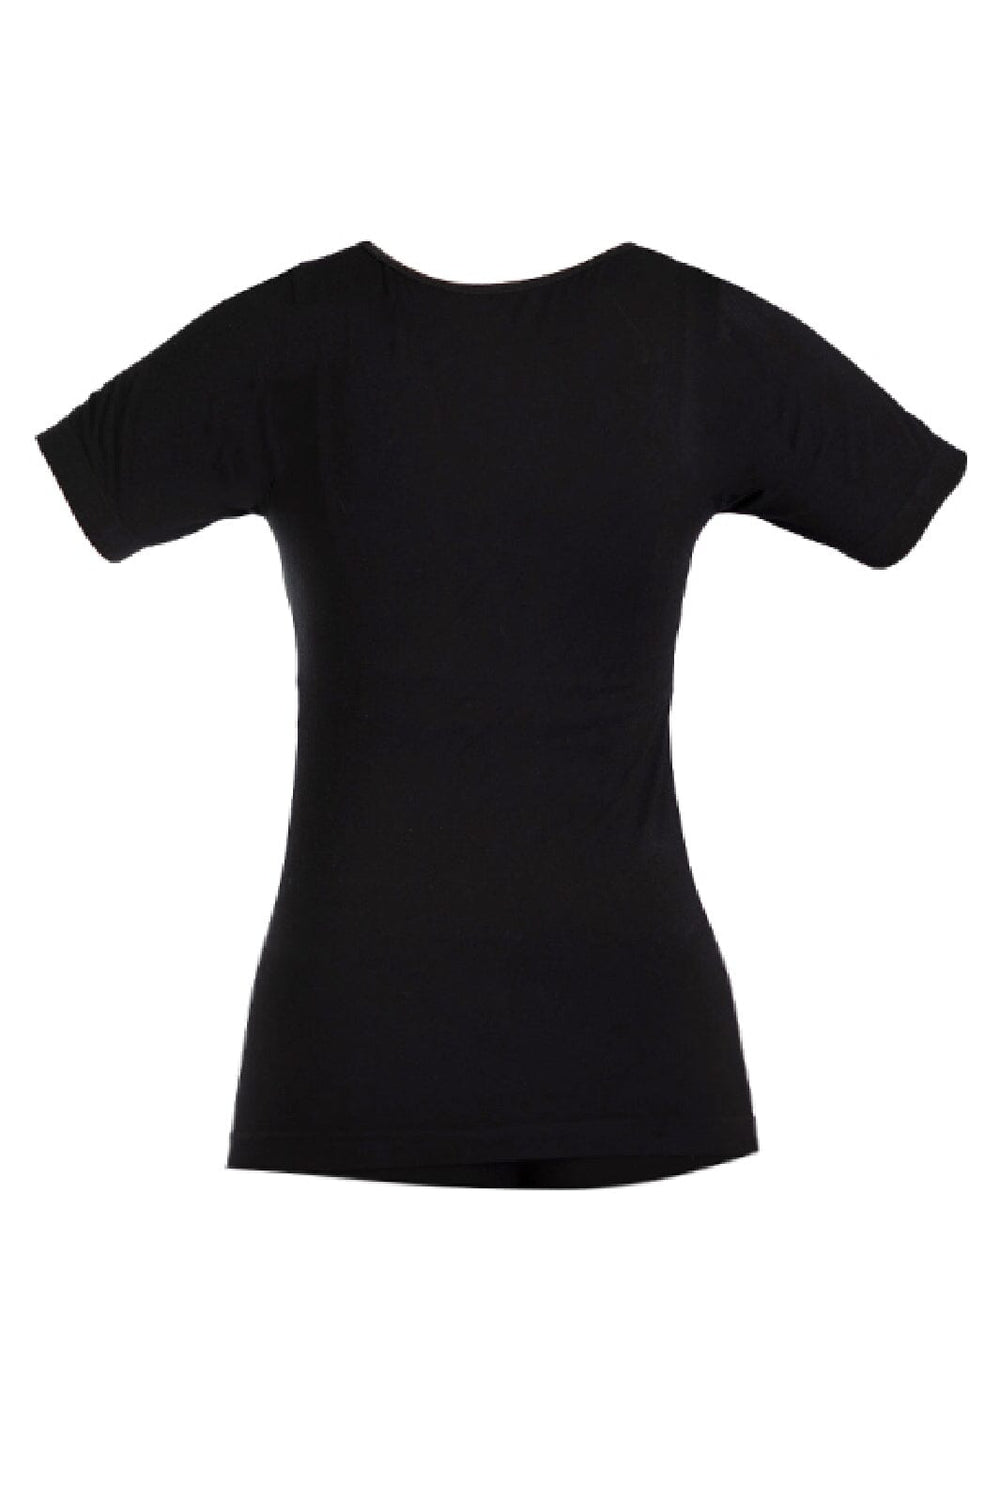 Soft basic - Haily t-shirt 2 pak - black T-shirts 